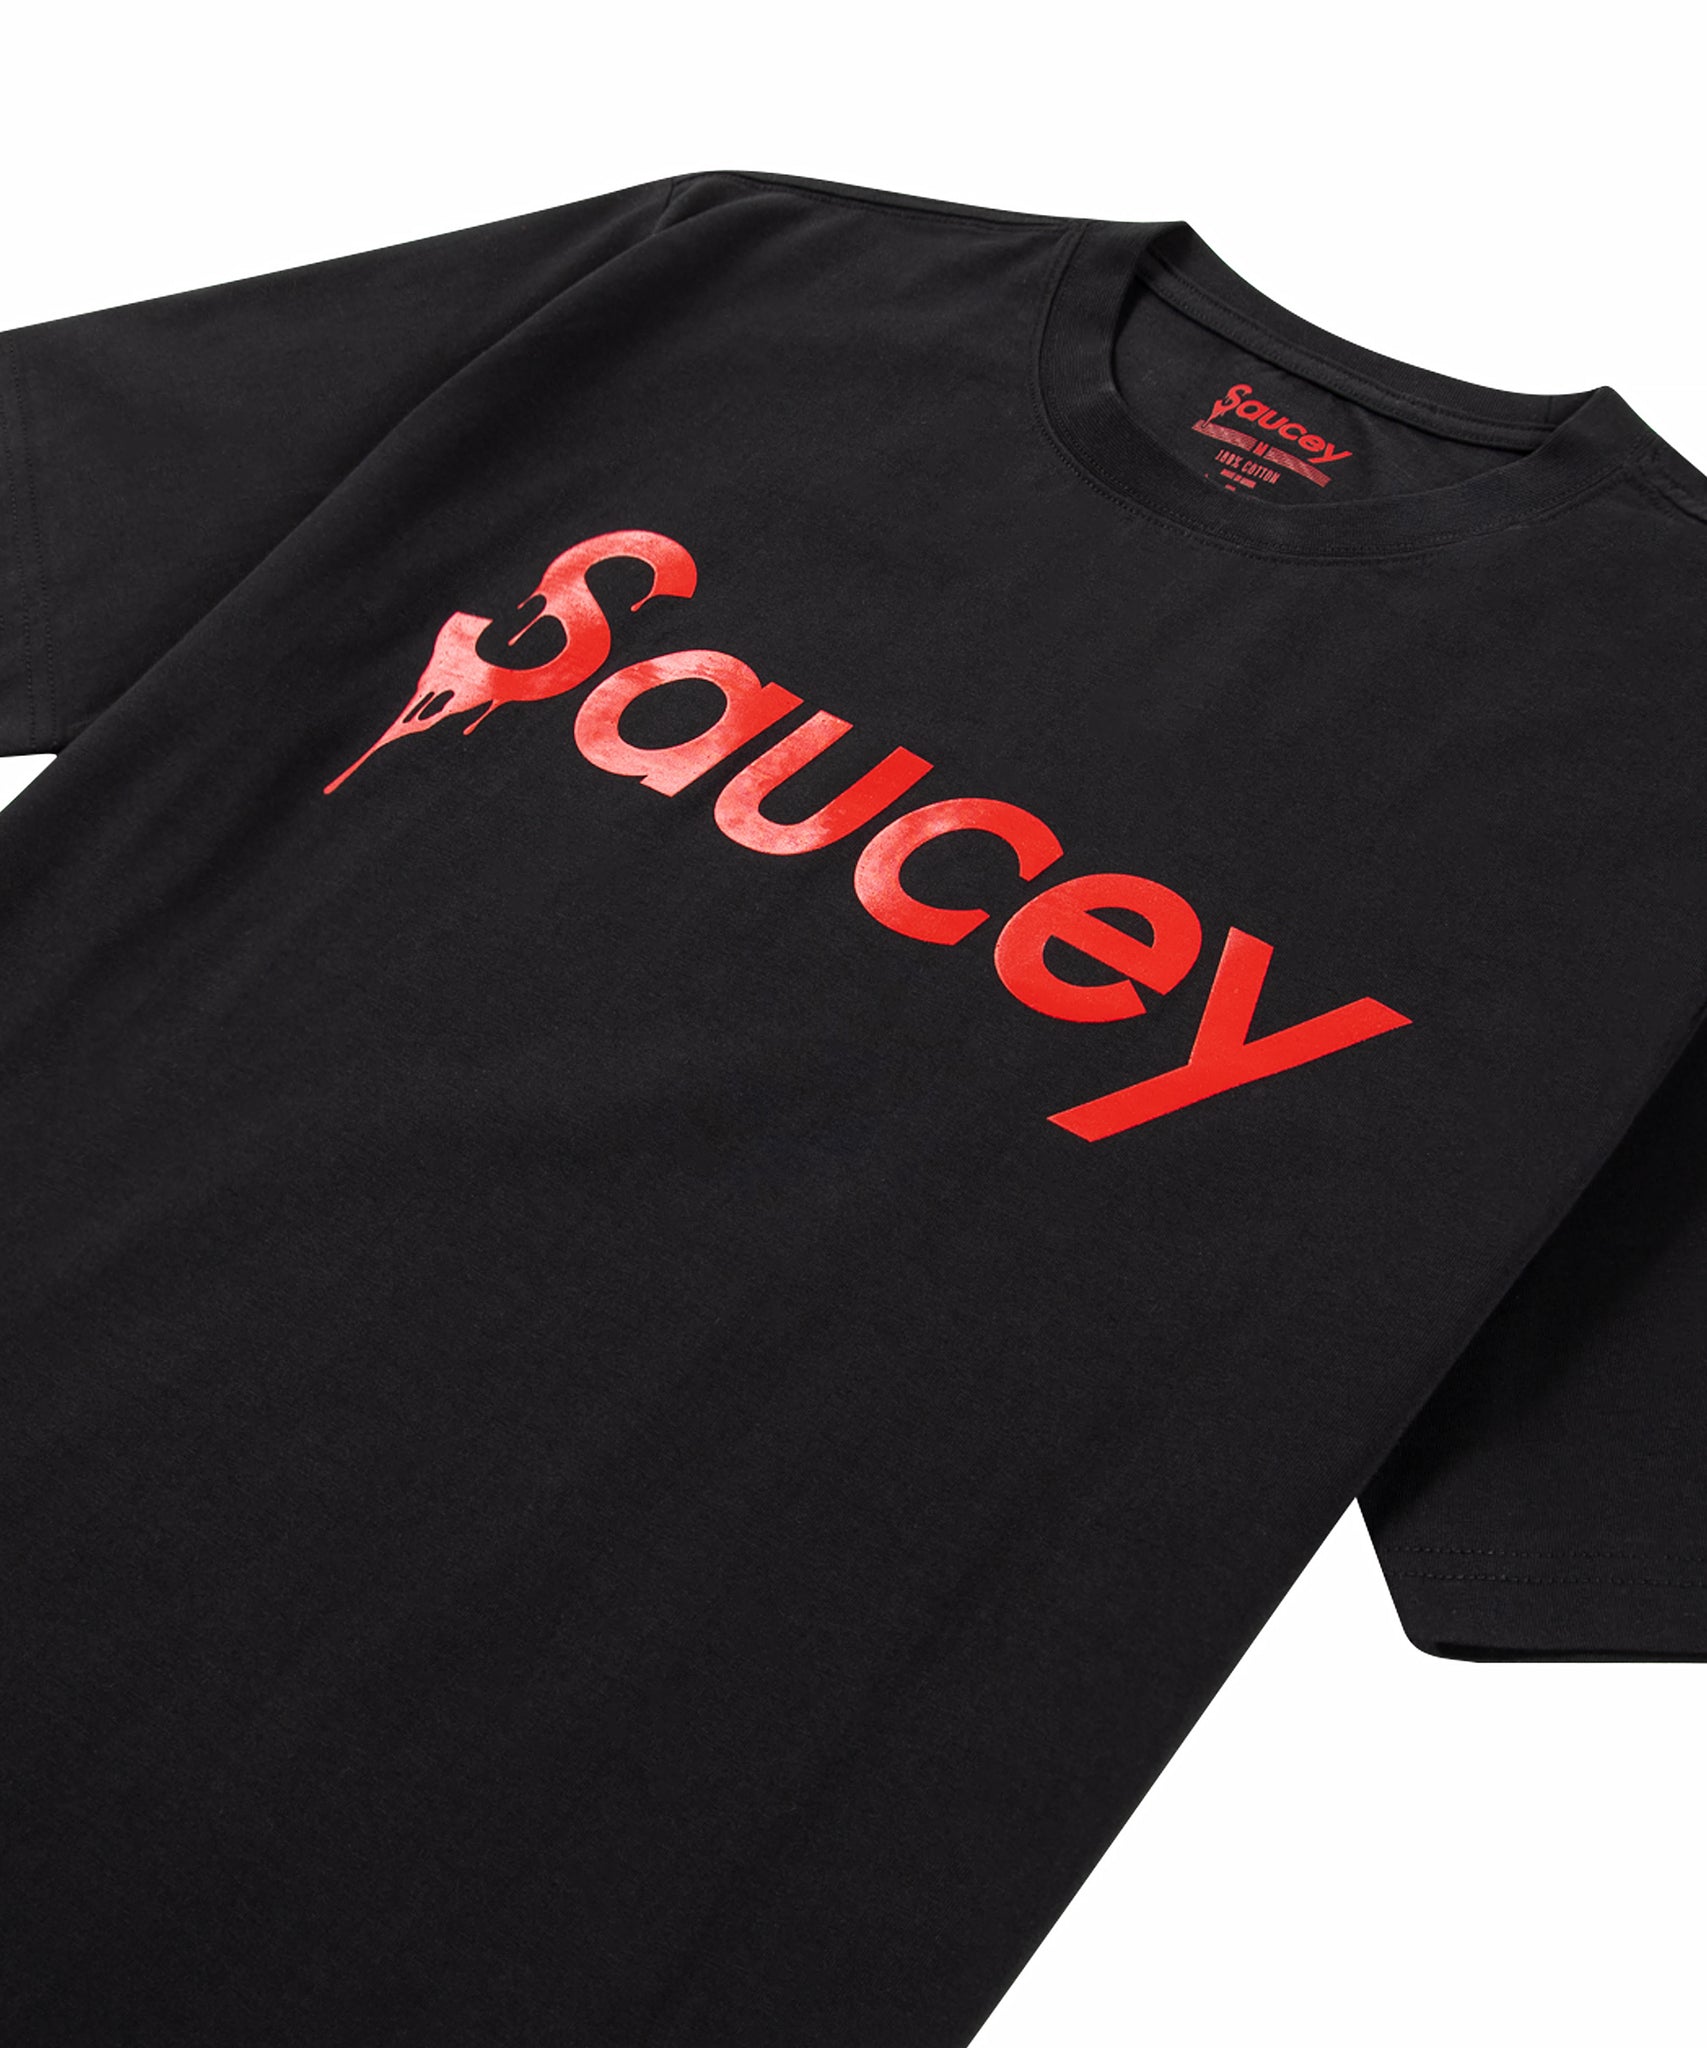 New Saucey Black T-Shirt